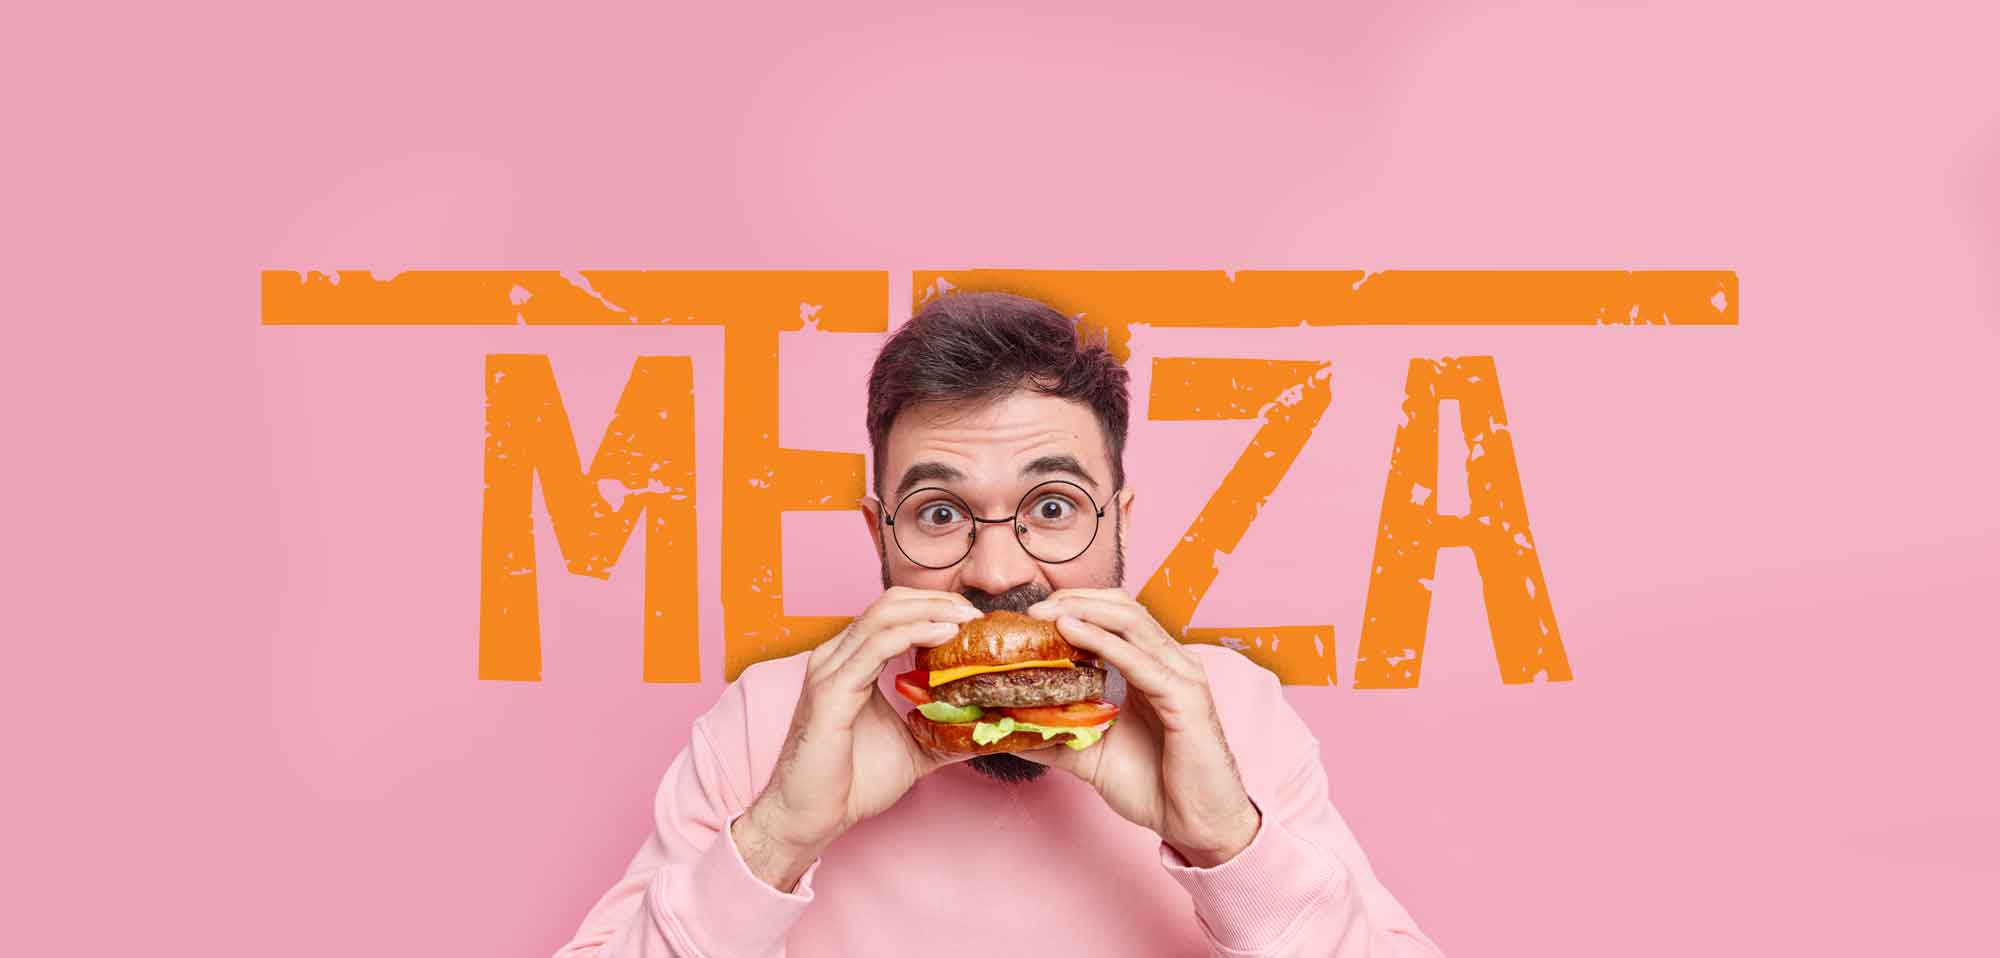 mezza logo design 5 mean eating a burger over the mezza logo